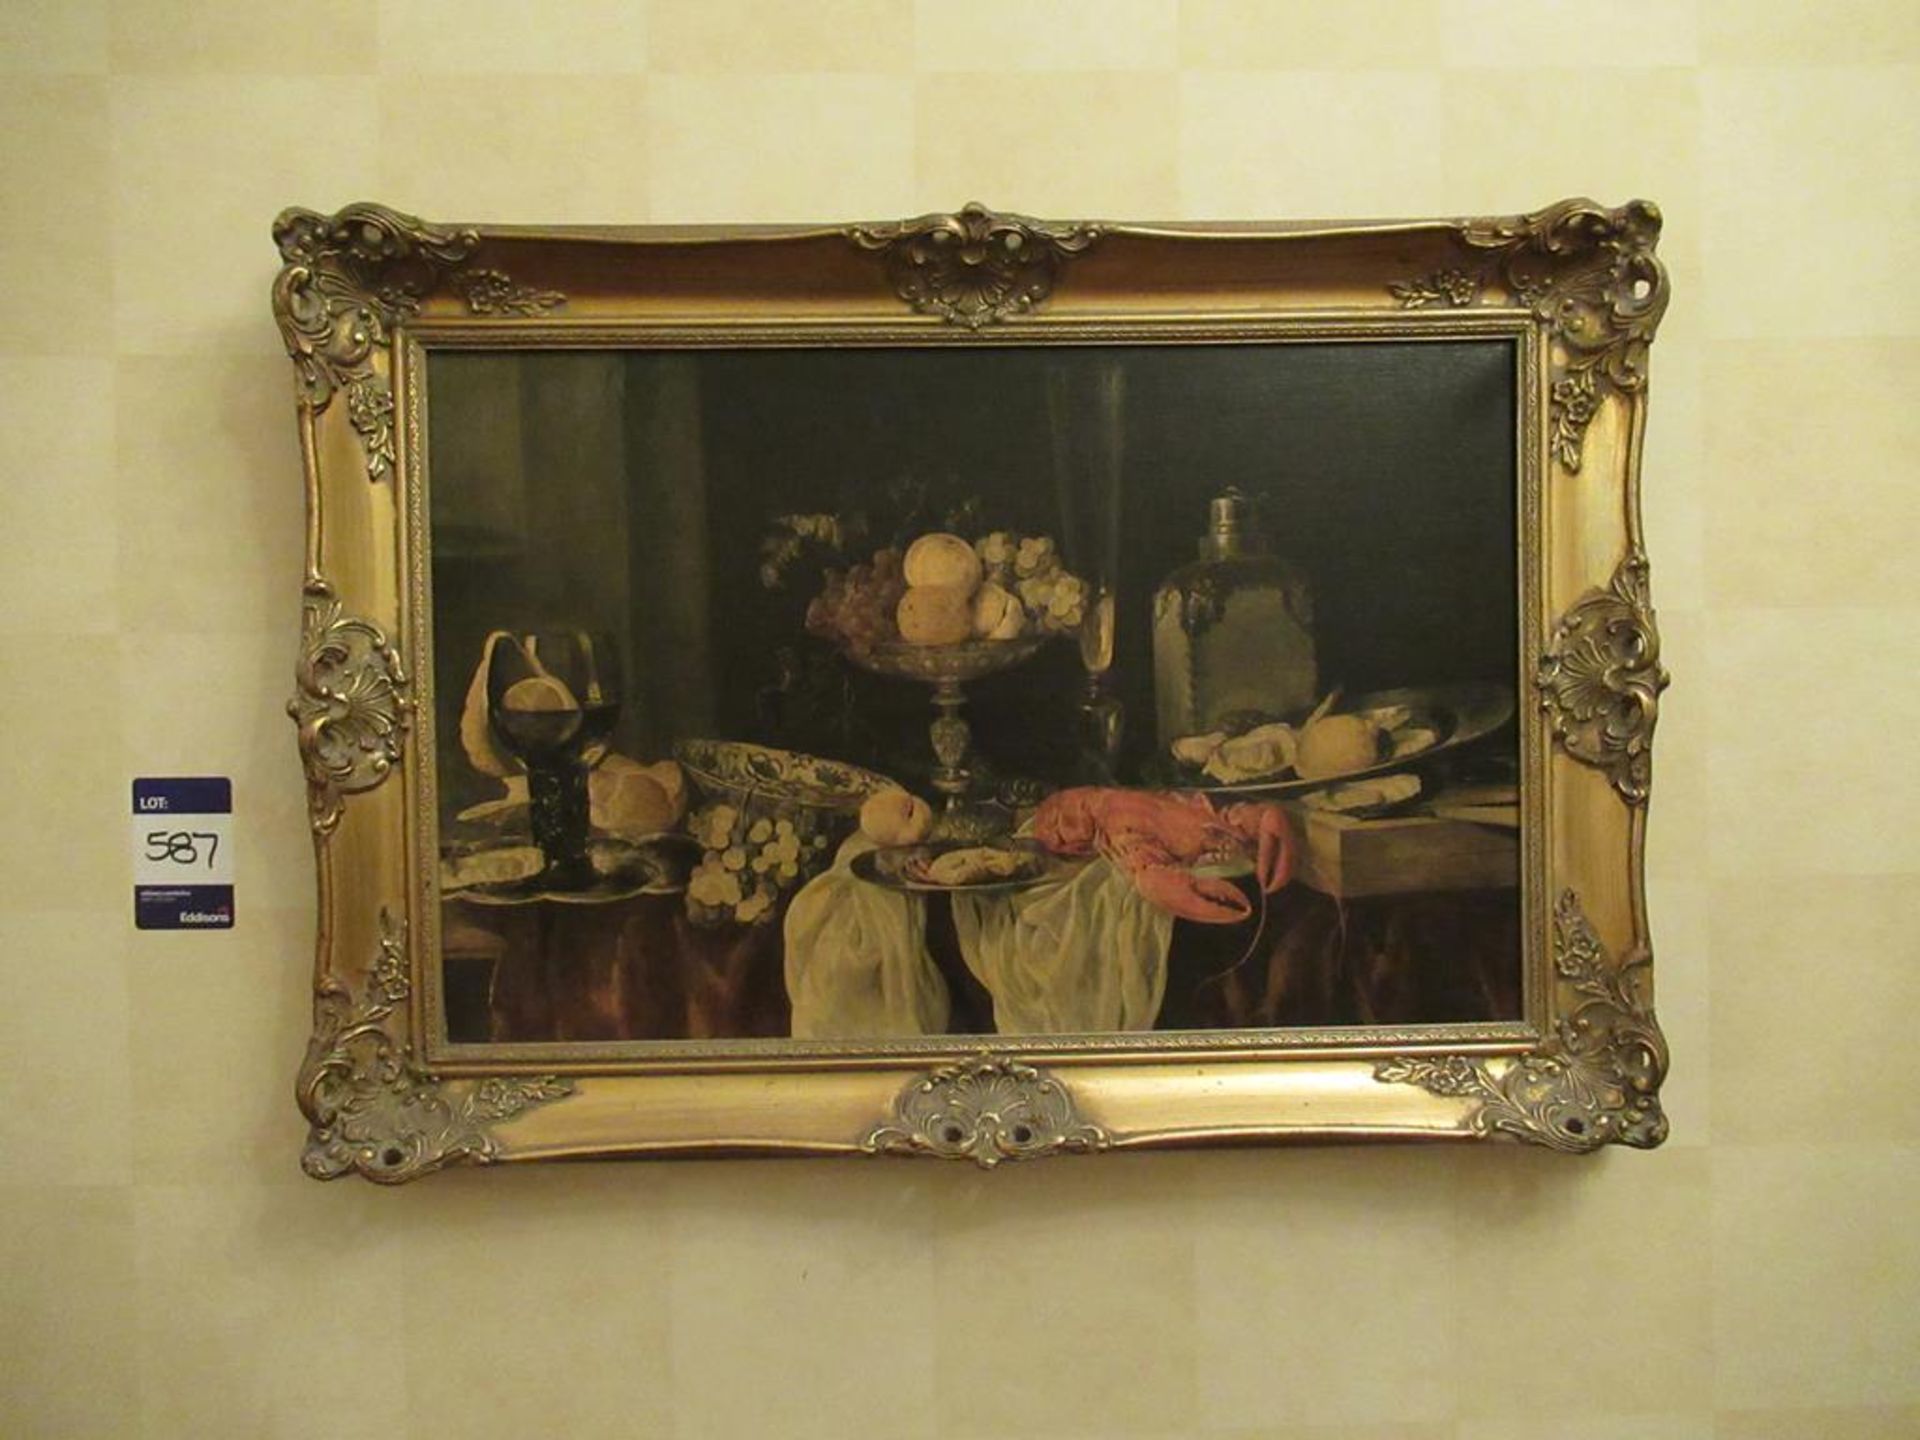 Artwork depicting Fruit & Lobster in gilded frame - varnished print